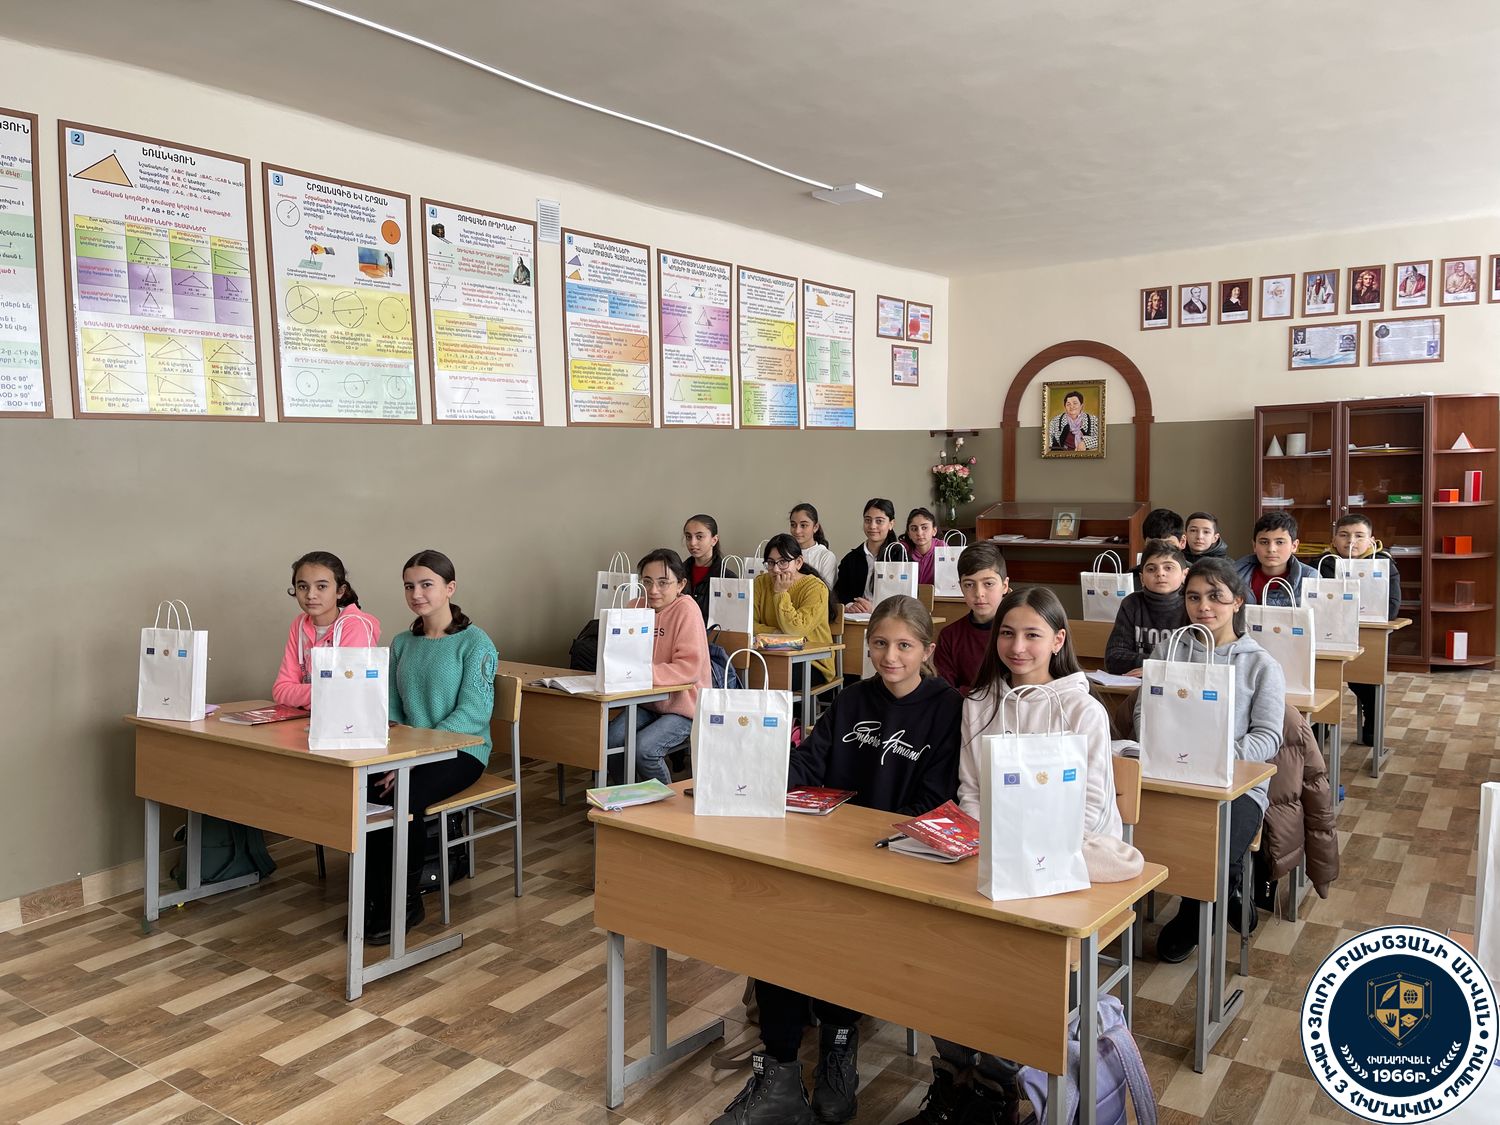 Գորիսի Յու. Բախշյանի անվան թիվ 3 հիմնական դպրոցի աշակերտներին բաժանվեցին «Յունիսեֆ Հայաստան» կազմակերպության կողմից տրամադրված փոքրիկ գրքերը